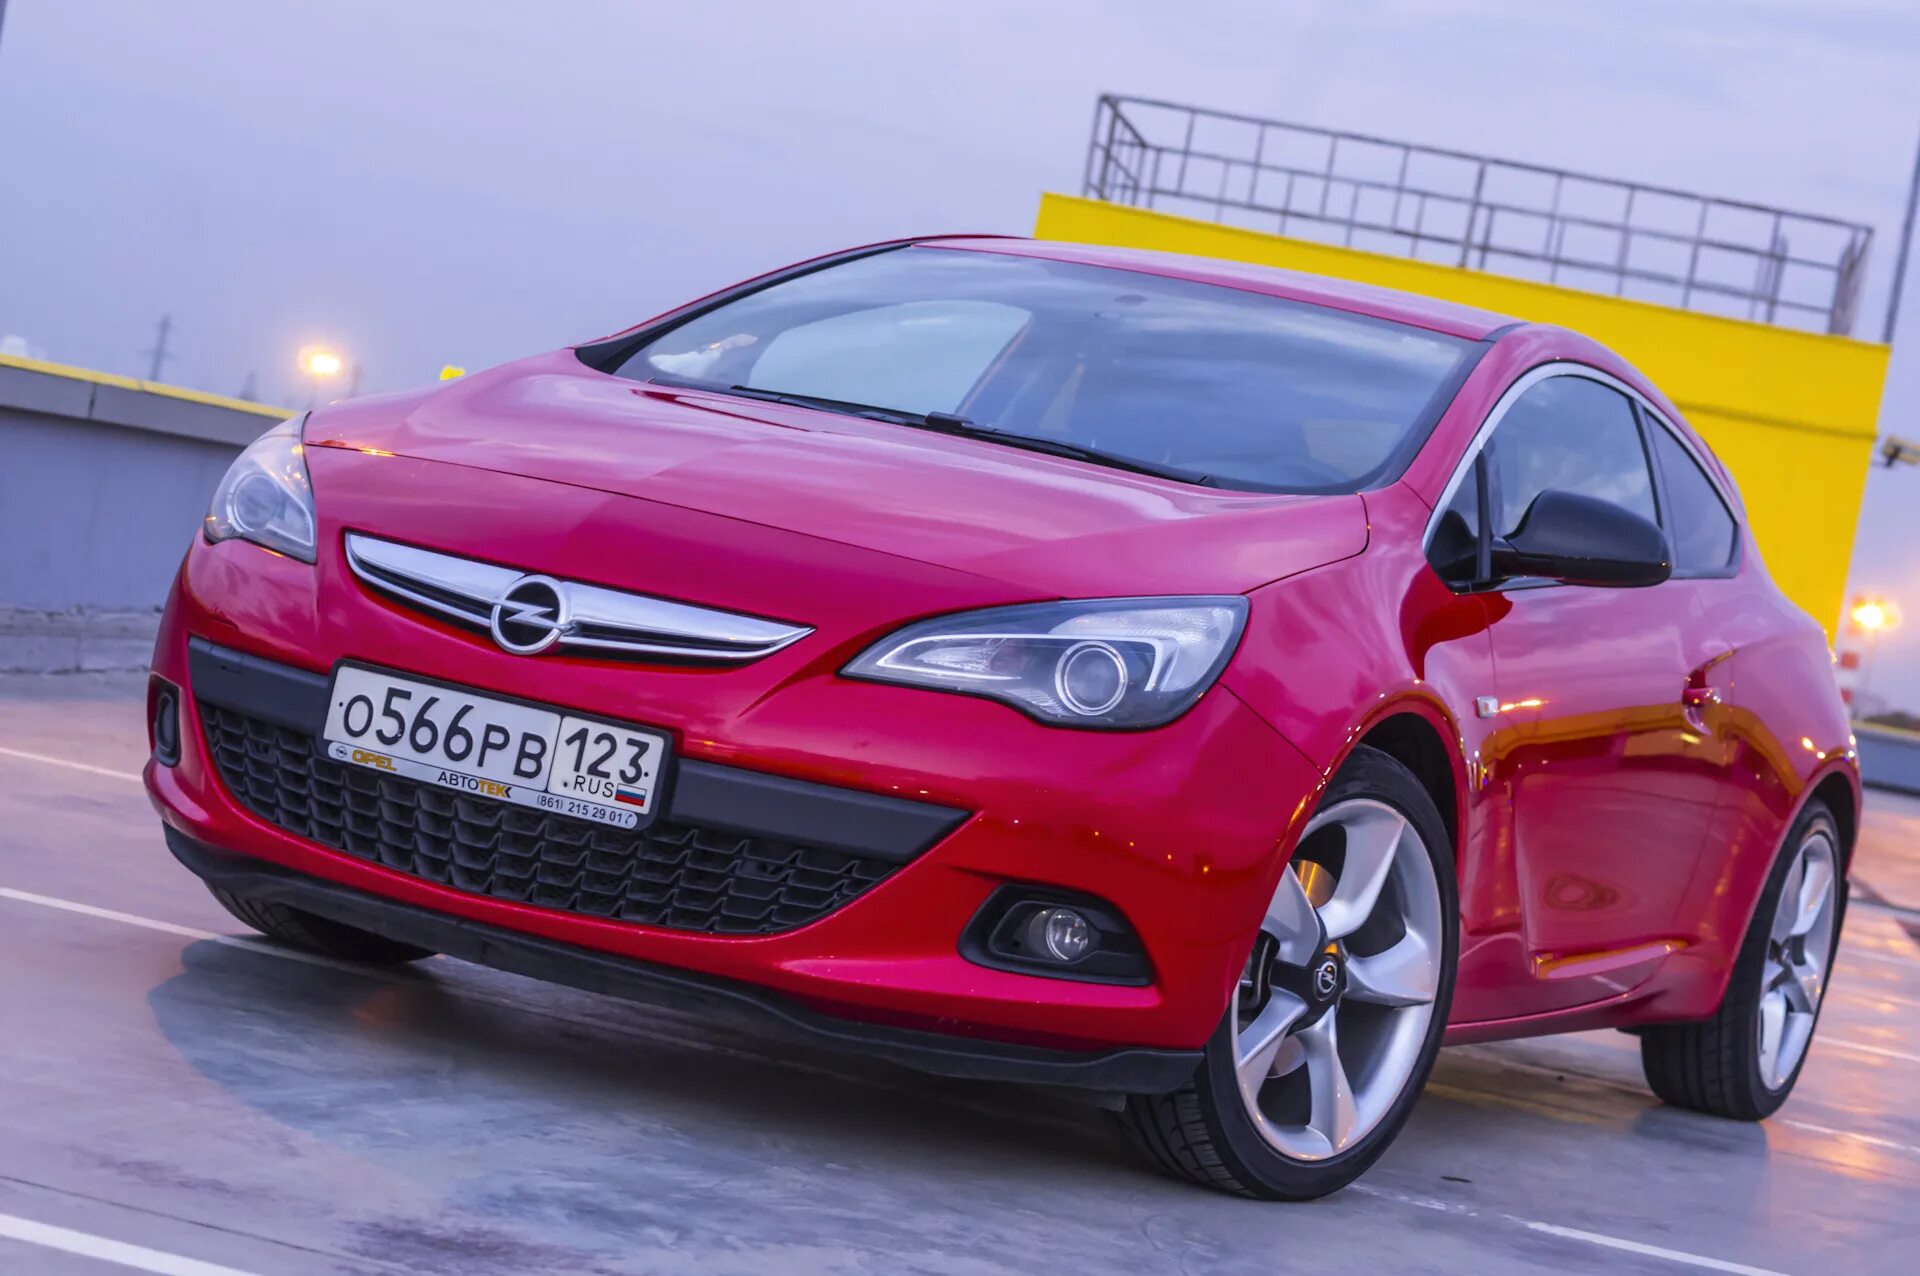 Opel Astra GTC 1.6. Opel Astra GTC Sport 2020. Opel Astra GTC 2016. Opel Astra GTC 2020 купе. Opel 2016